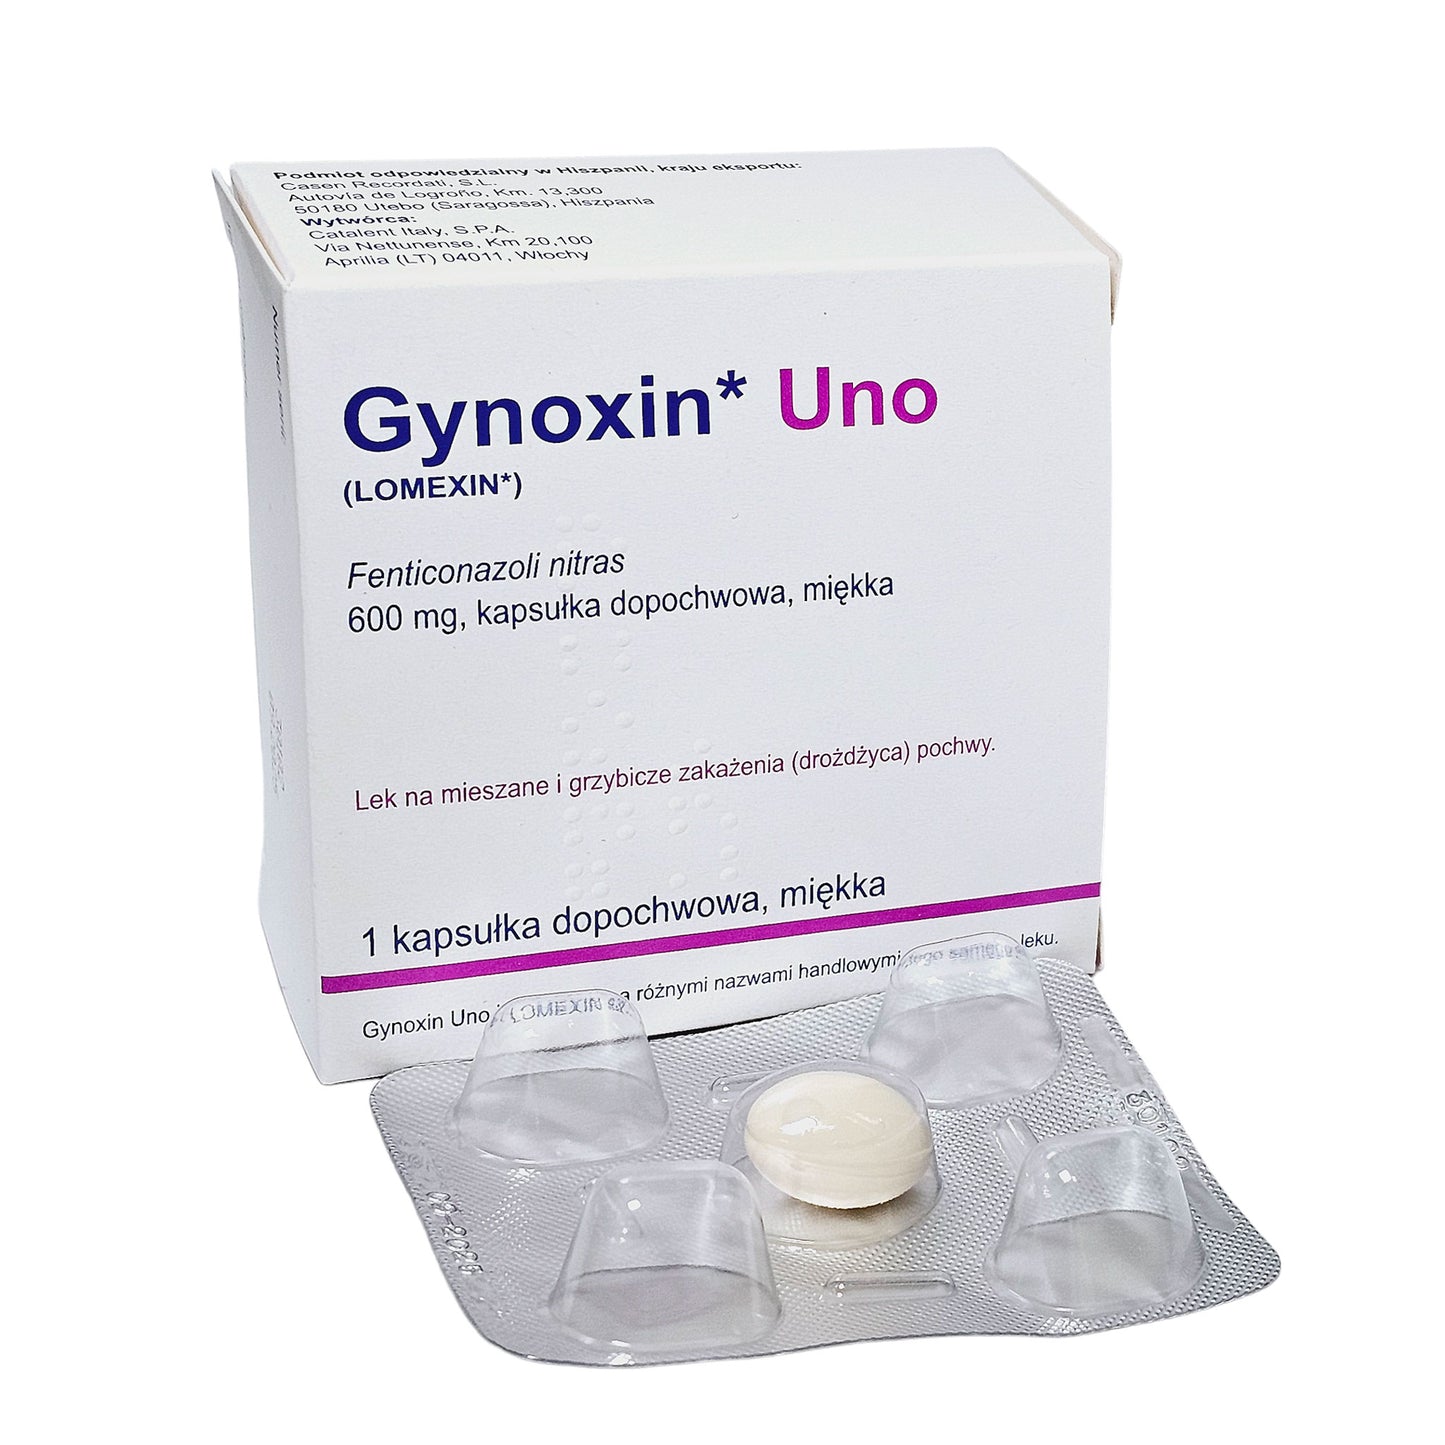 Gynoxin Uno